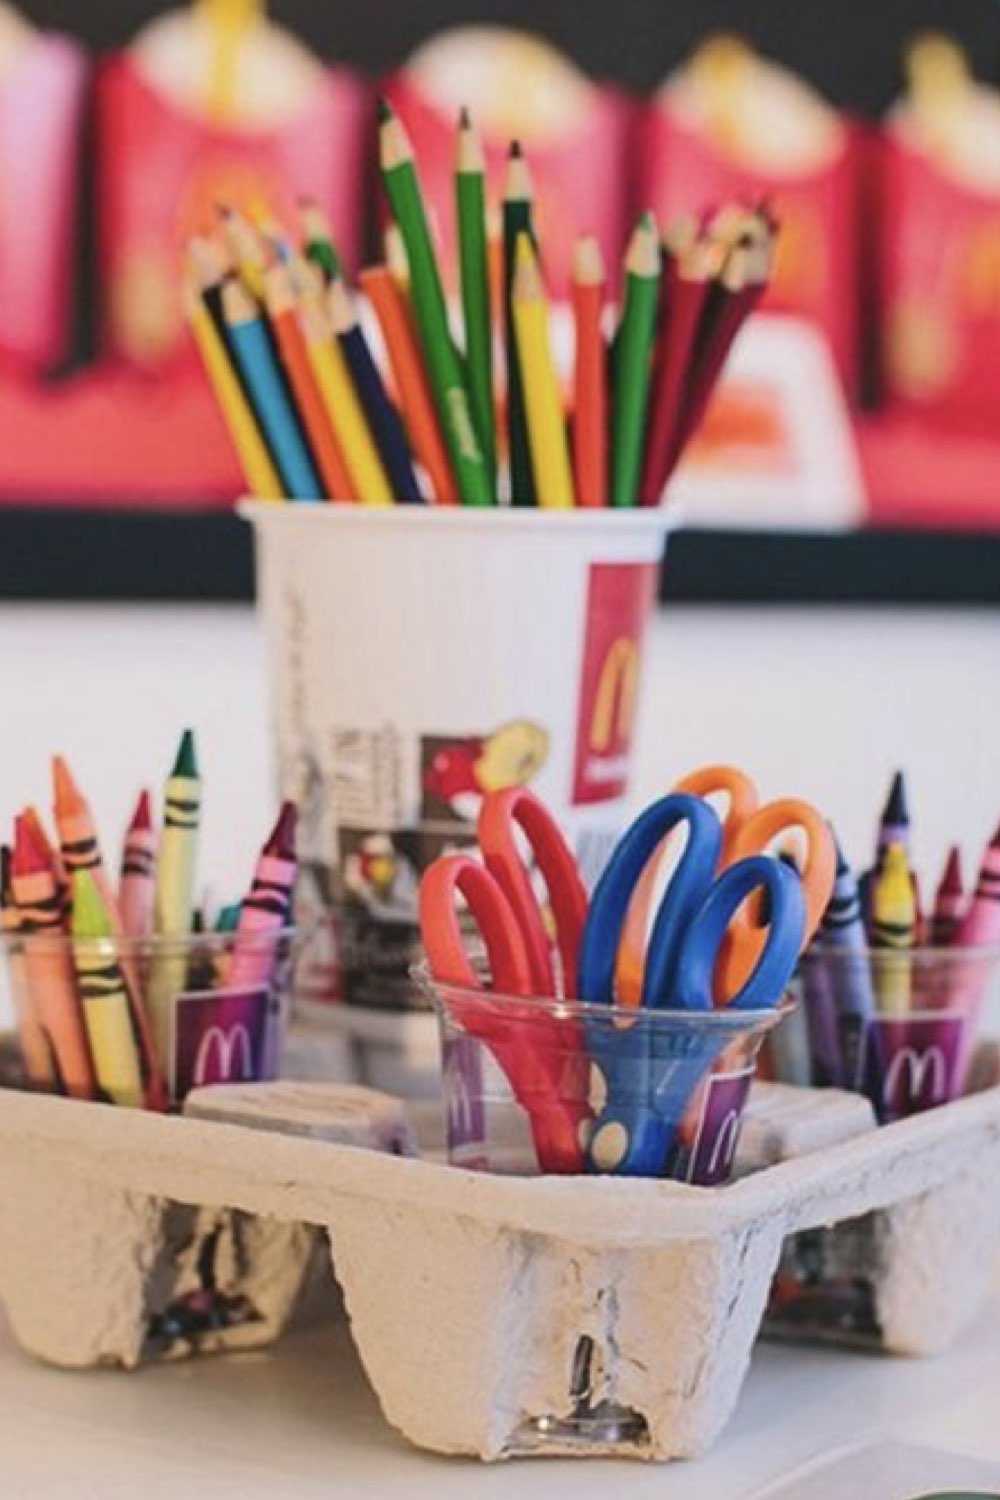 idee amenagement classe professeur des ecoles pas cher facile classe de primaire activité manuelle crayon ciseaux fourniture récup